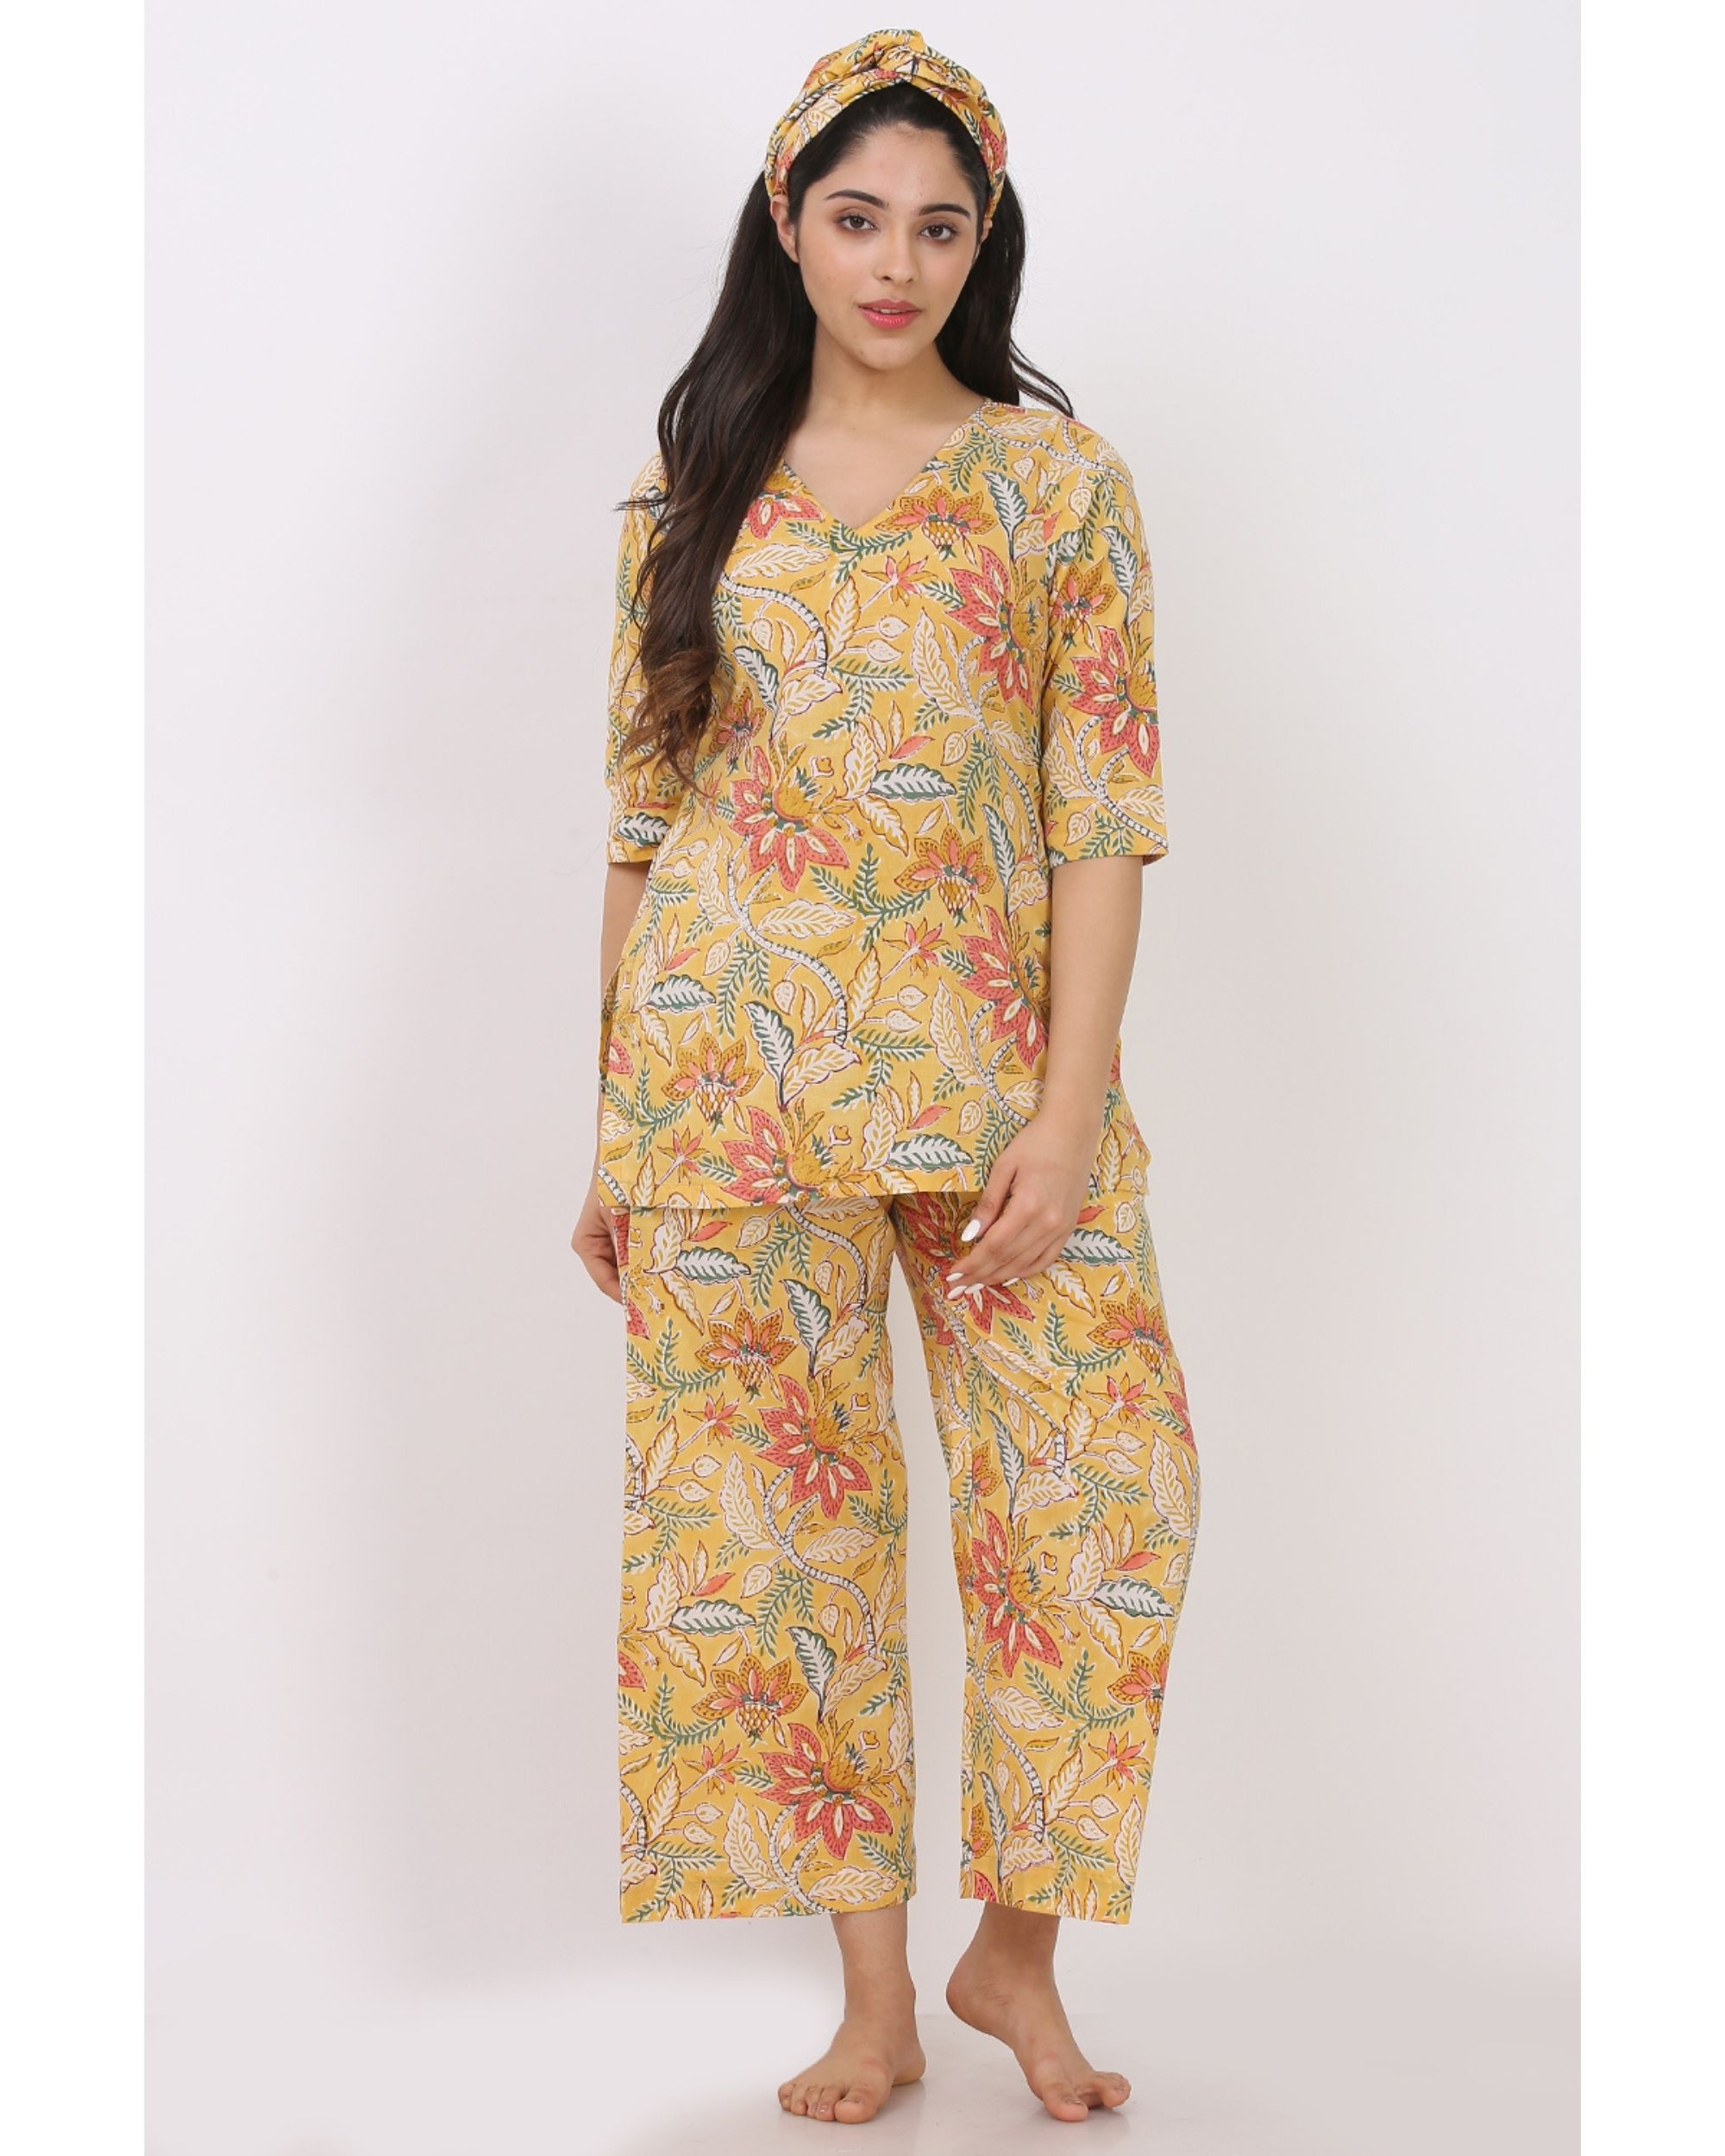 Summer yellow floral printed short kurta and pyjama with hair band - set of three